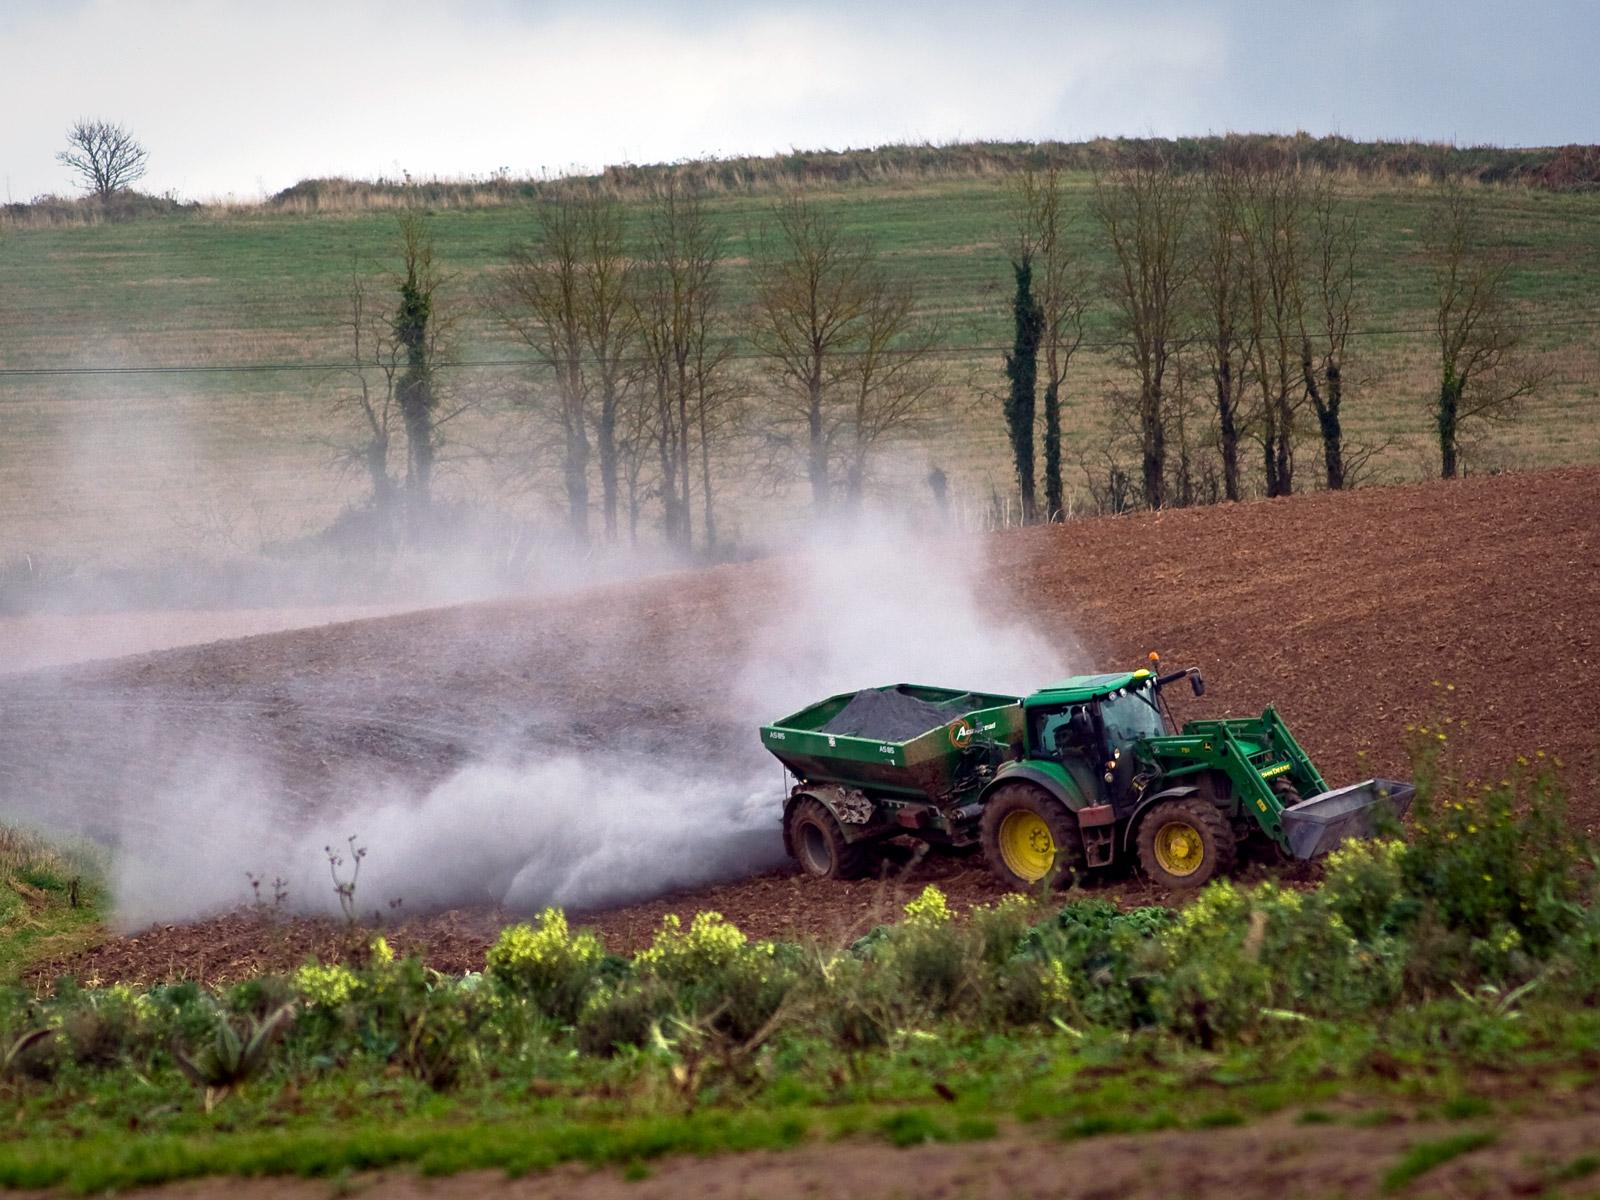 Tractor spreading fertiliser - by Mark Robinson (CC BY 2.0)